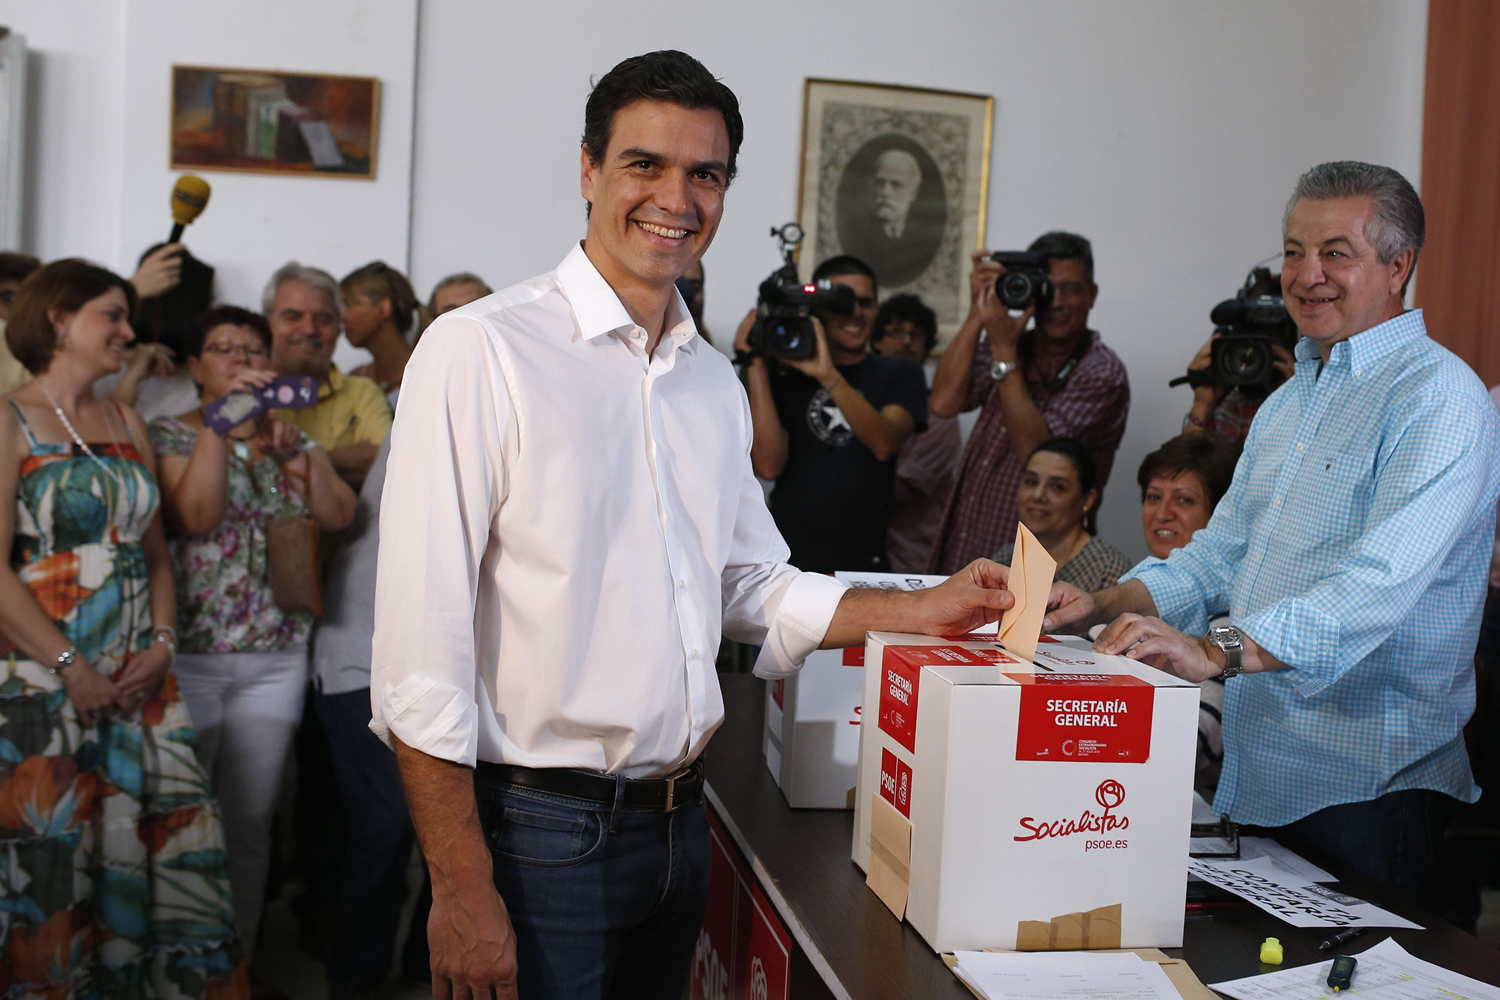 Pedro Sánchez gana las primarias y se convierte en el nuevo líder del socialismo español